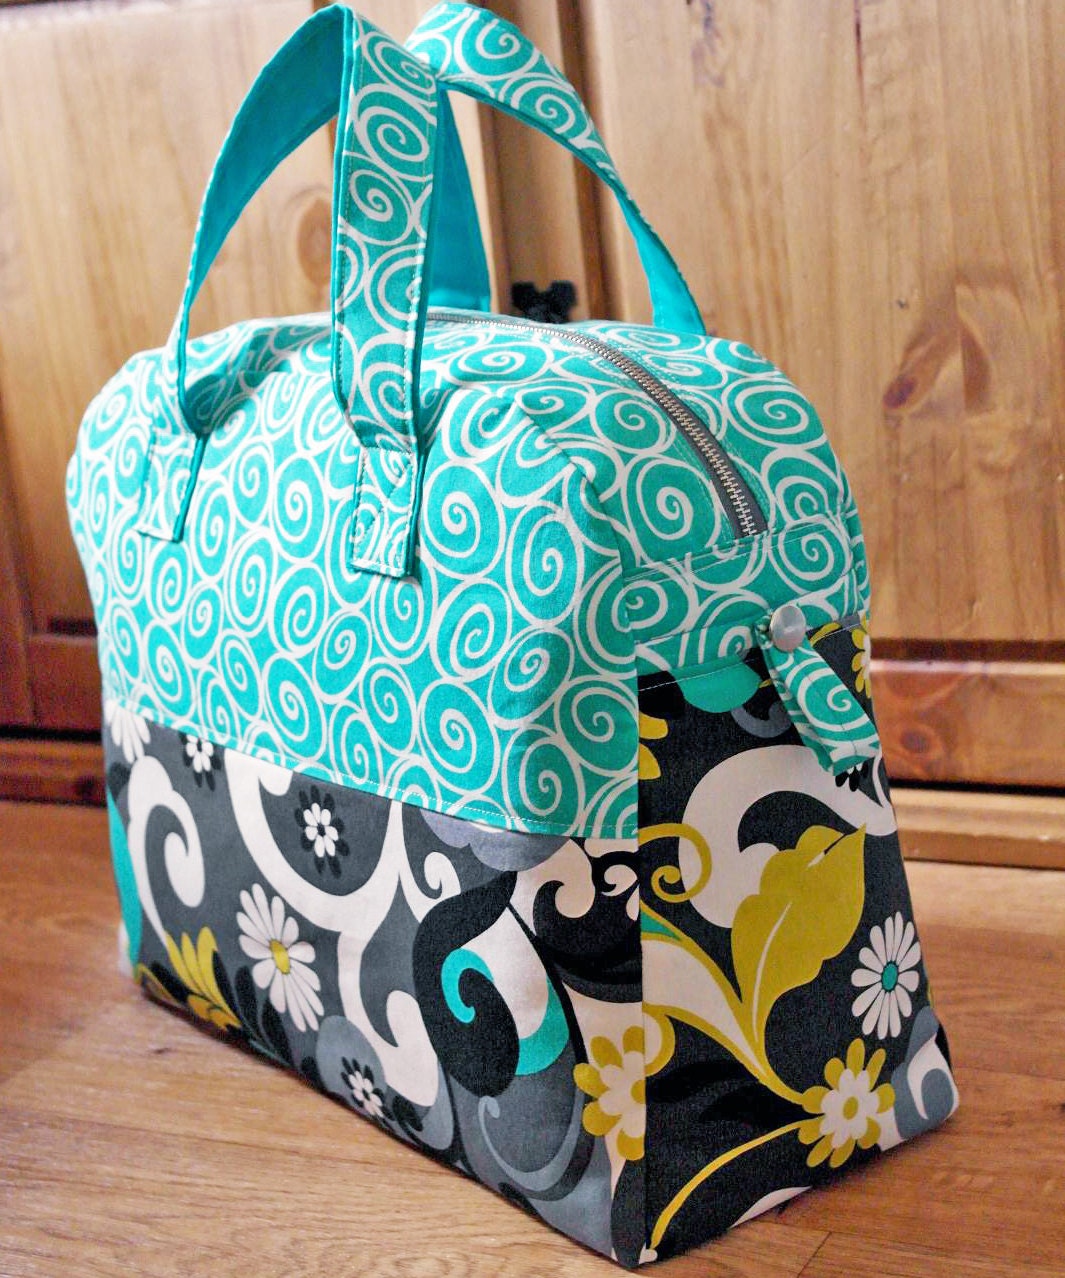 Sewing Pattern Weekender Overnight Travel Bag By Susieddesigns 